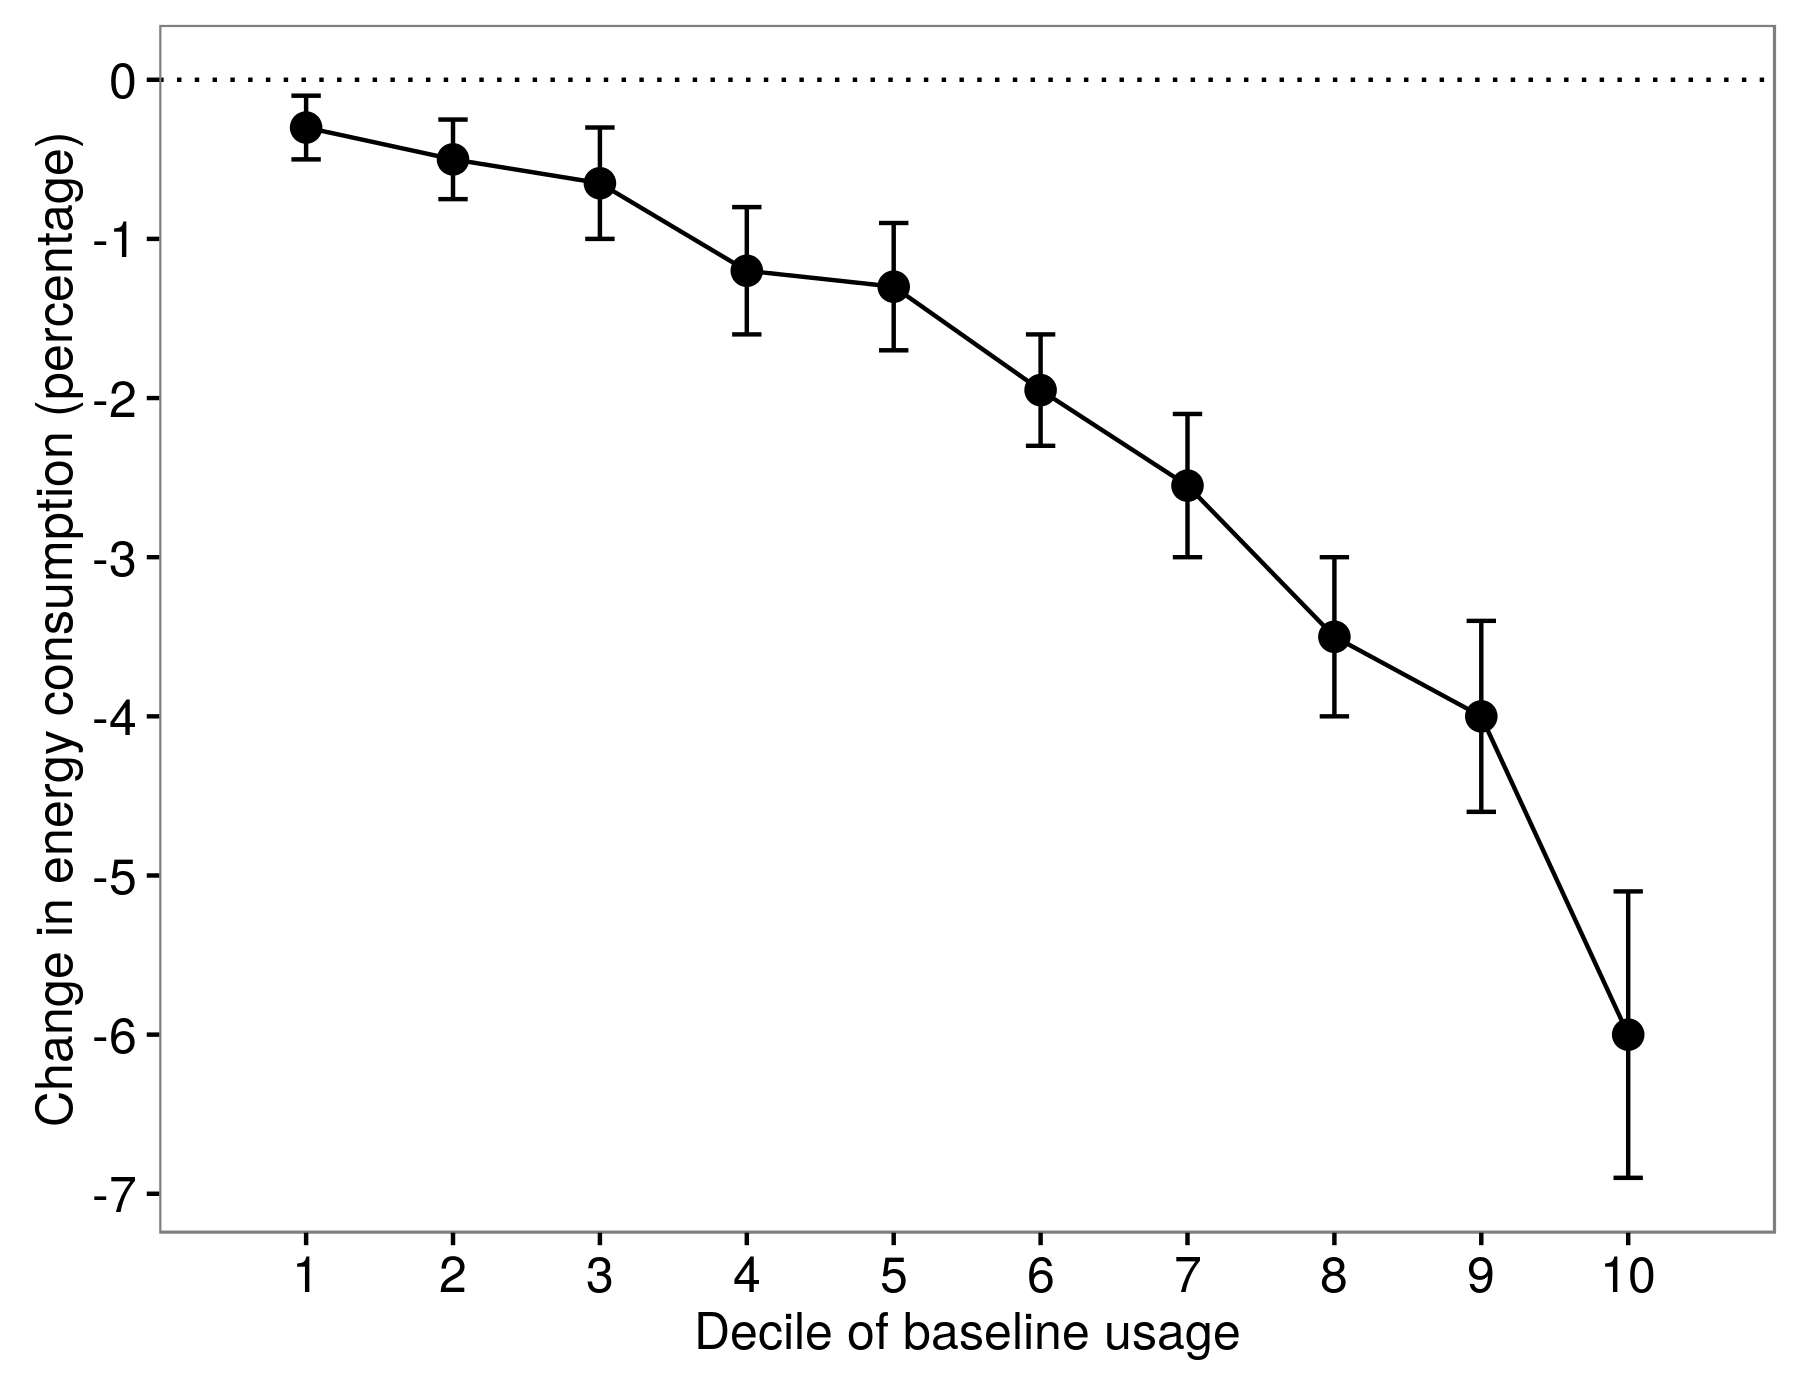 4.8 pav. Gydymo efektų heterogeniškumas Allcott (2011). Mažesnis energijos vartojimas žmonėms skiriasi skirtingais pradiniais vartojimo deciliais. Pritaikytas iš "Allcott" (2011 m.), 8 pav.